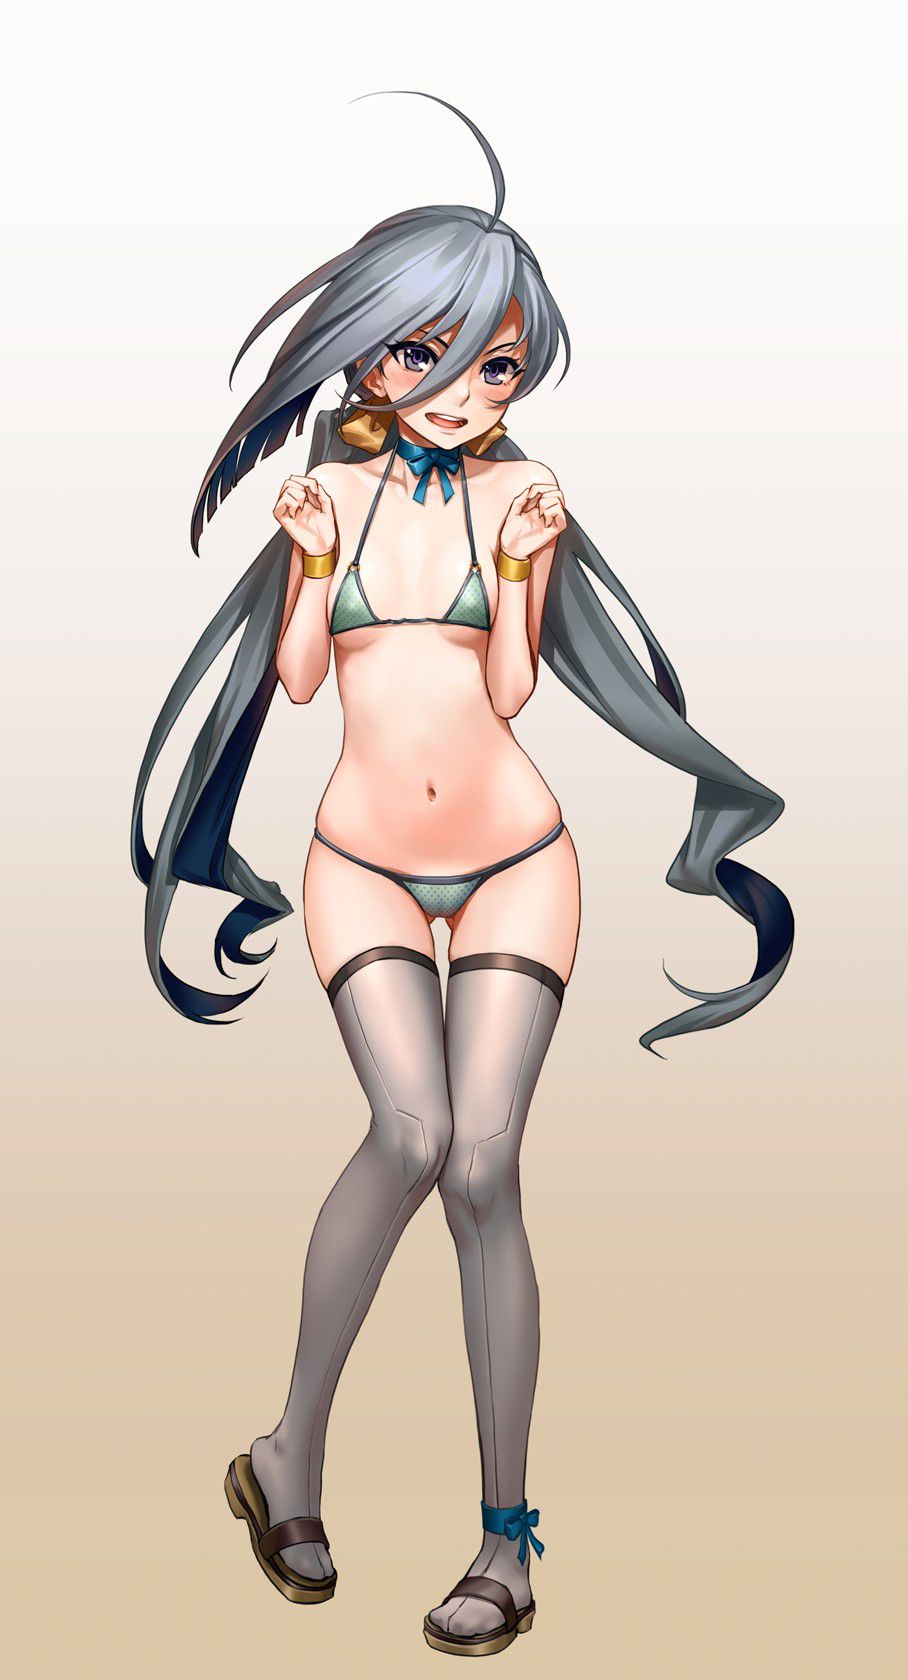 Porori Chikuni! Secondary erotic picture of a girl in a micro bikini wwww part3 40